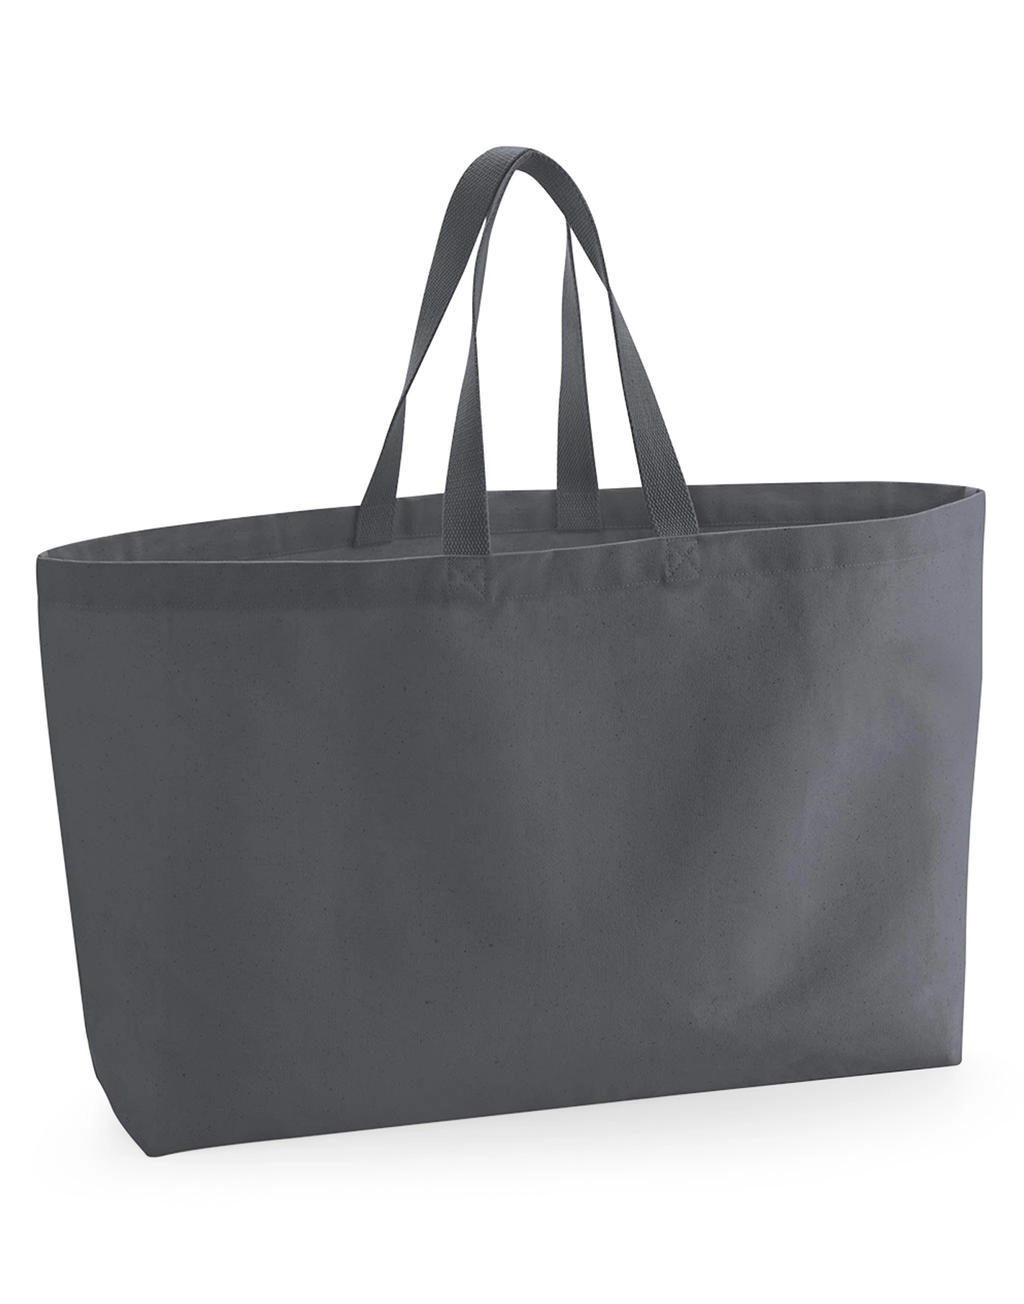 Oversized Canvas Tote Bag zum Besticken und Bedrucken mit Ihren Logo, Schriftzug oder Motiv.